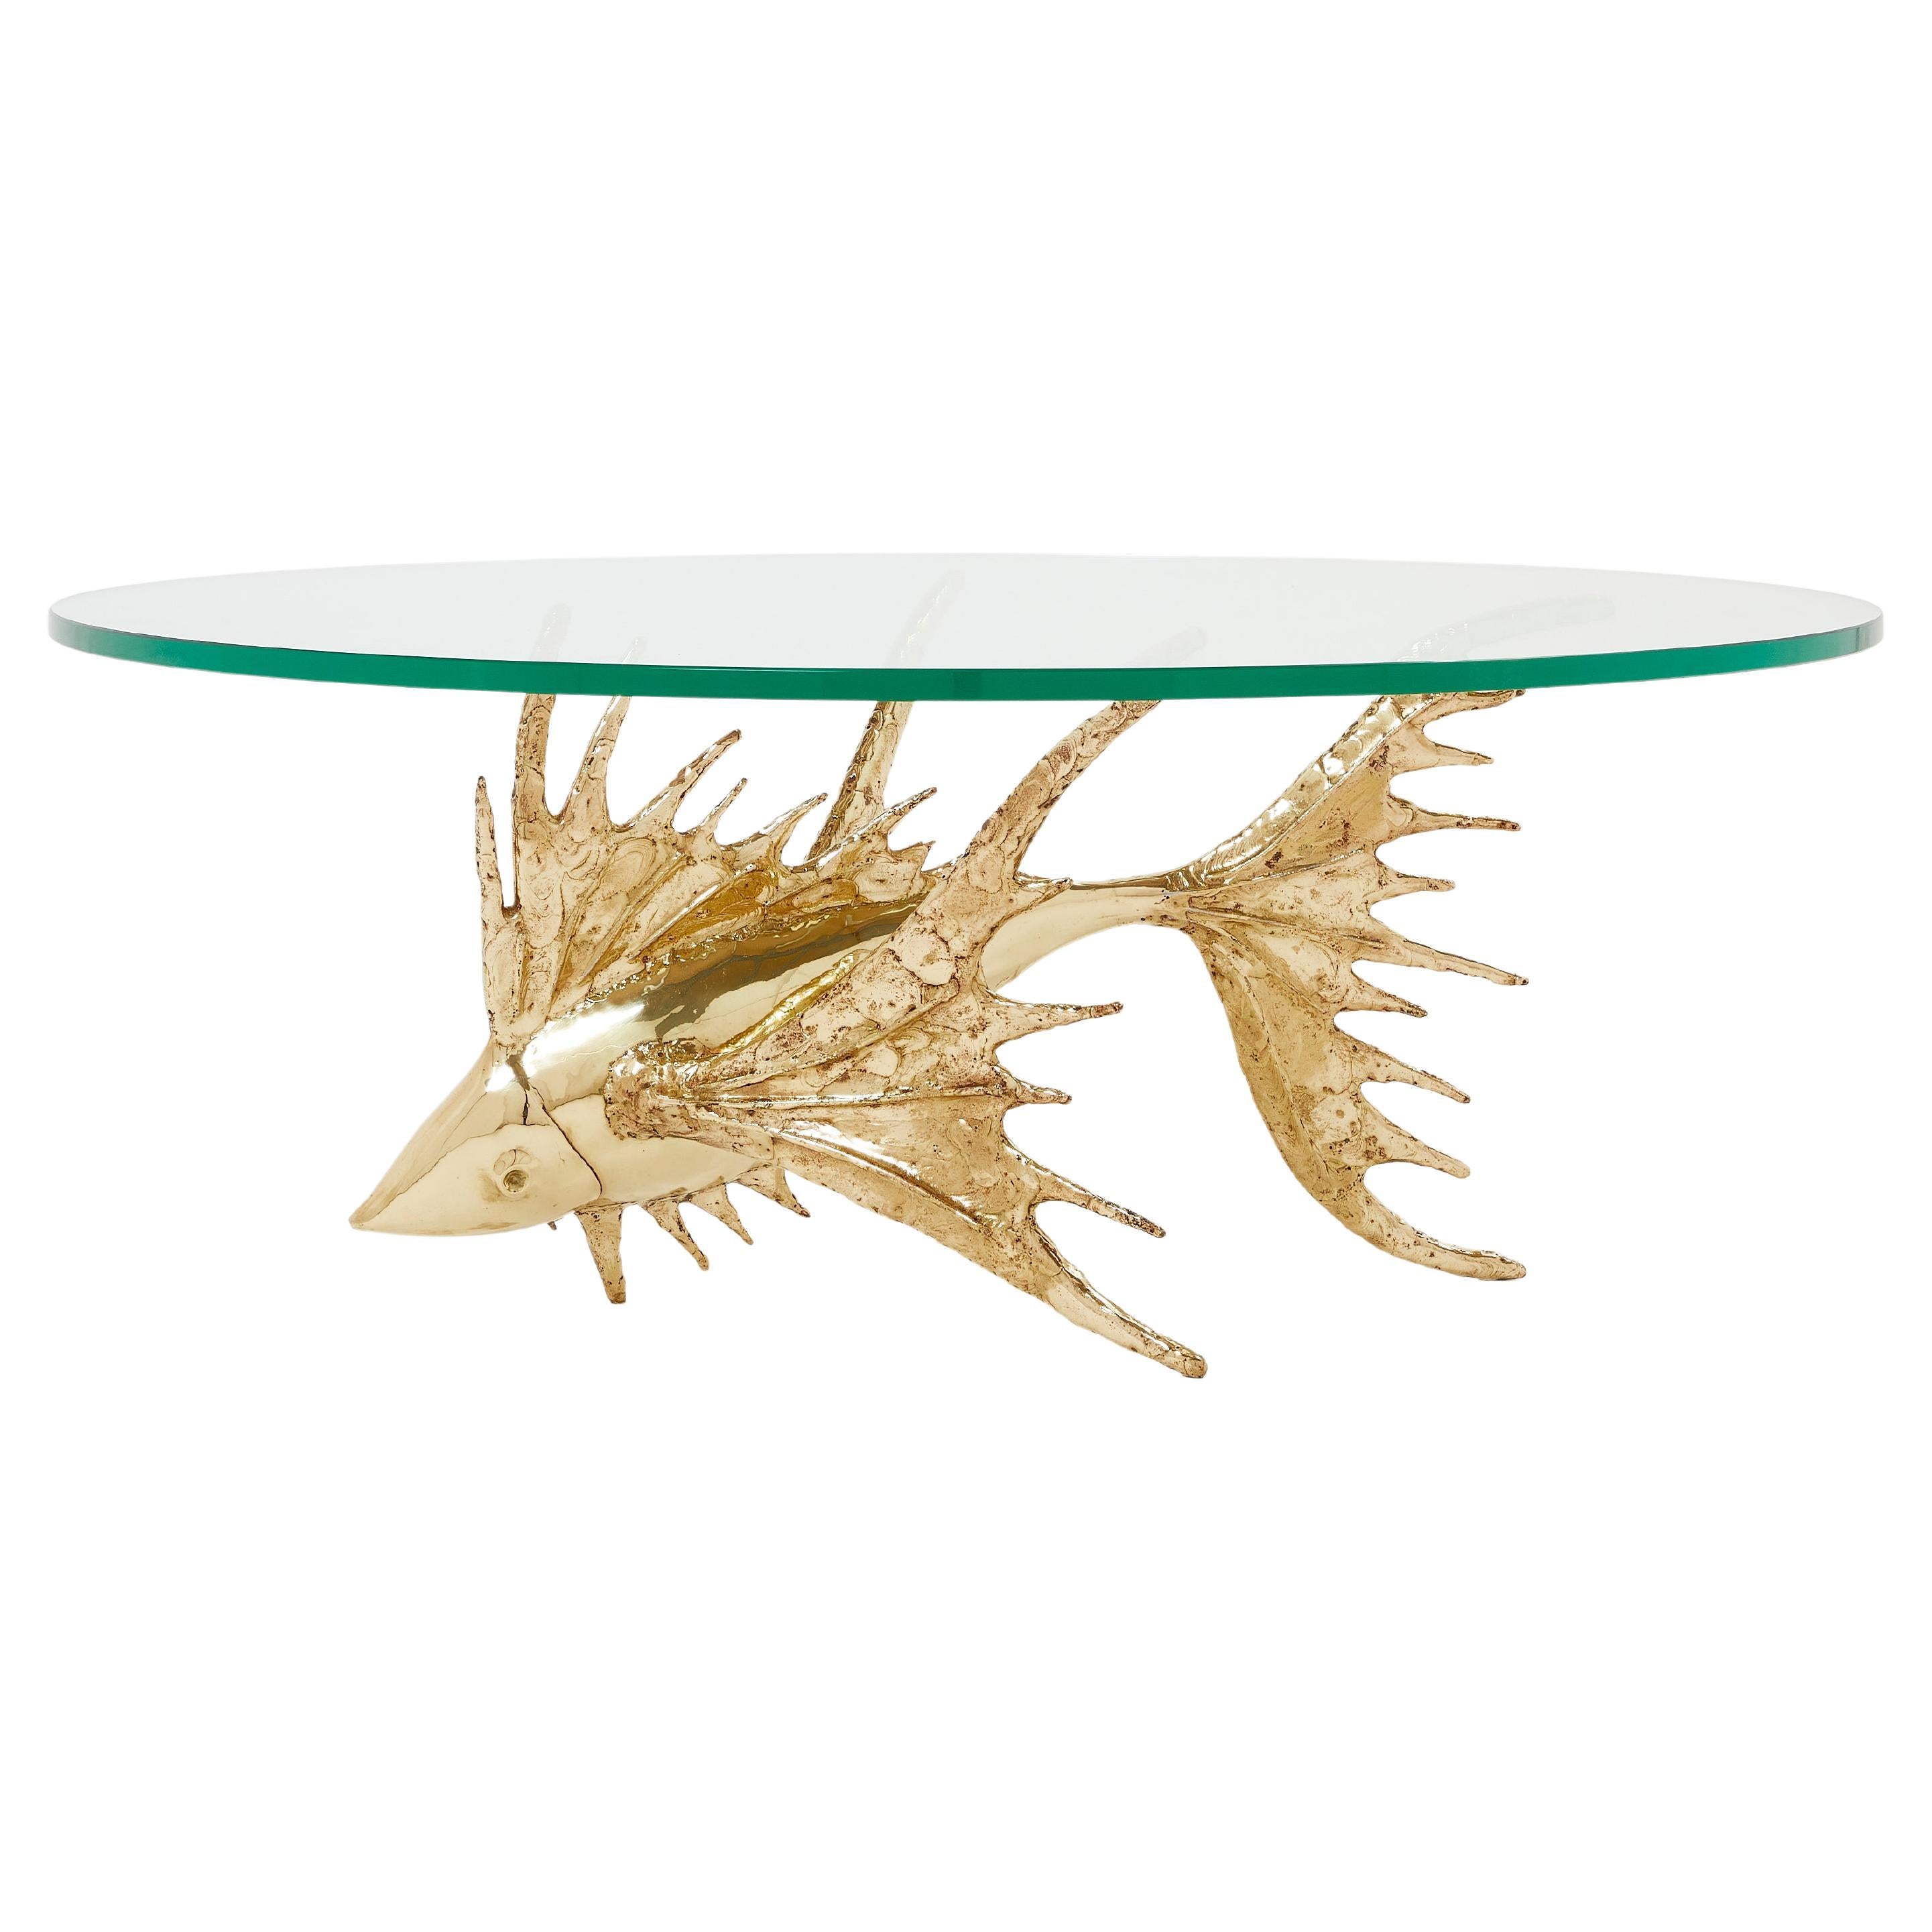 Unique Signed Alain Chervet Brass Fish Sculpture Coffee Table 1977